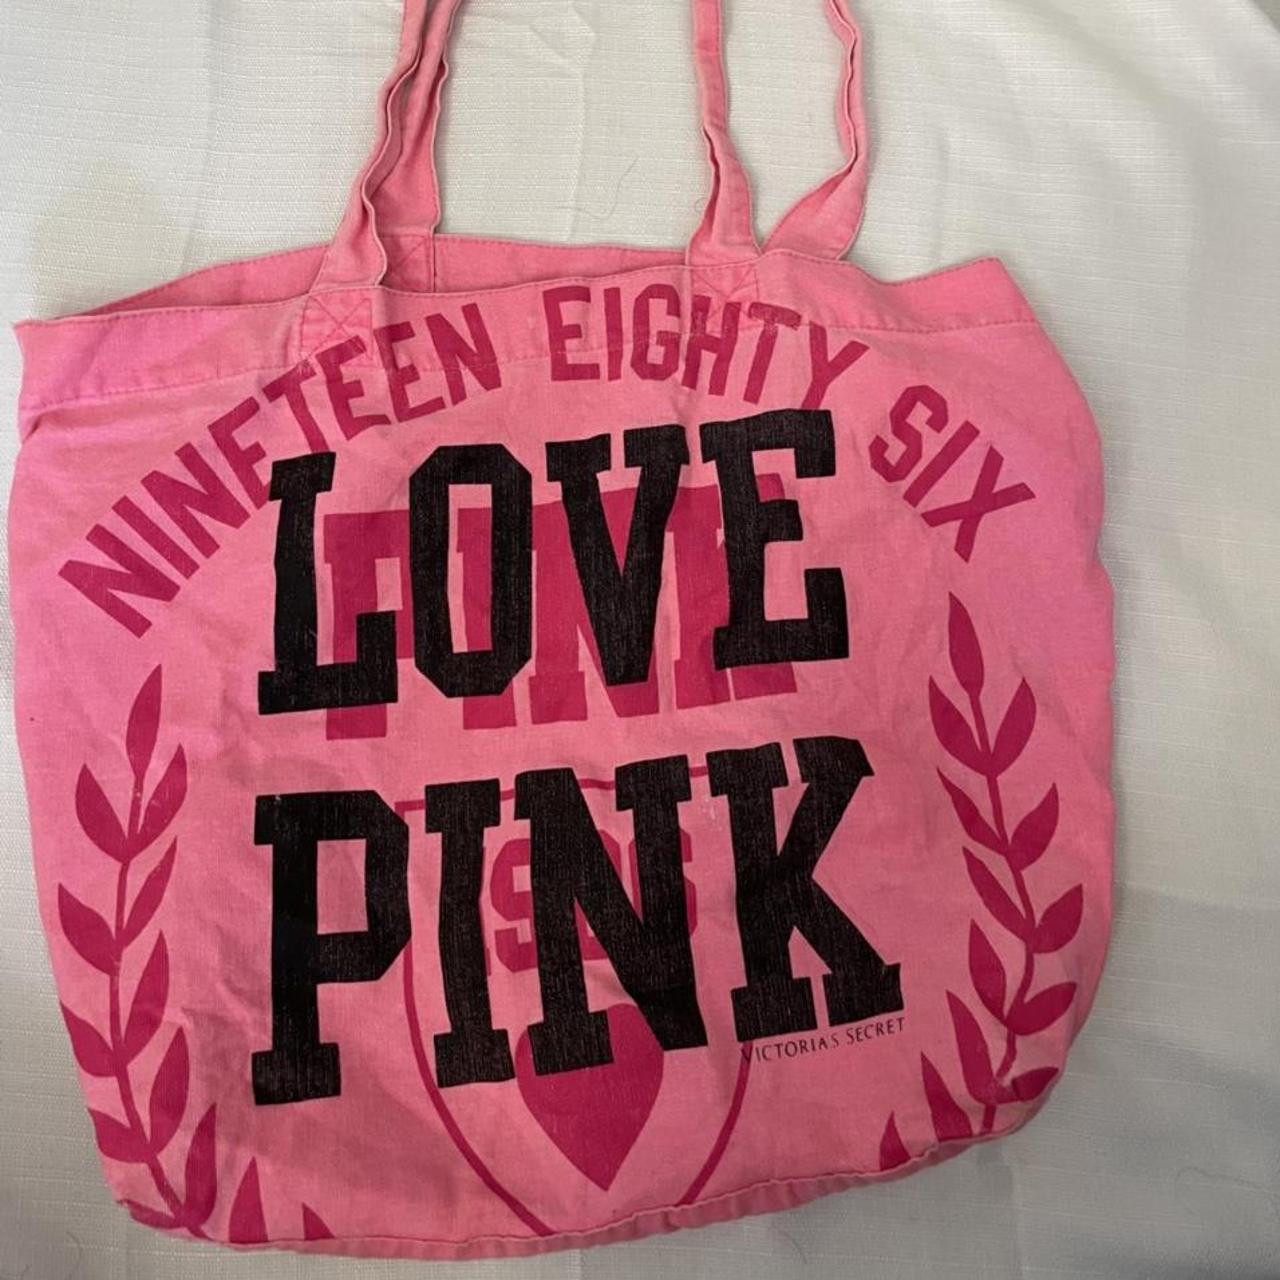 Vintage Pink tote bag - Depop